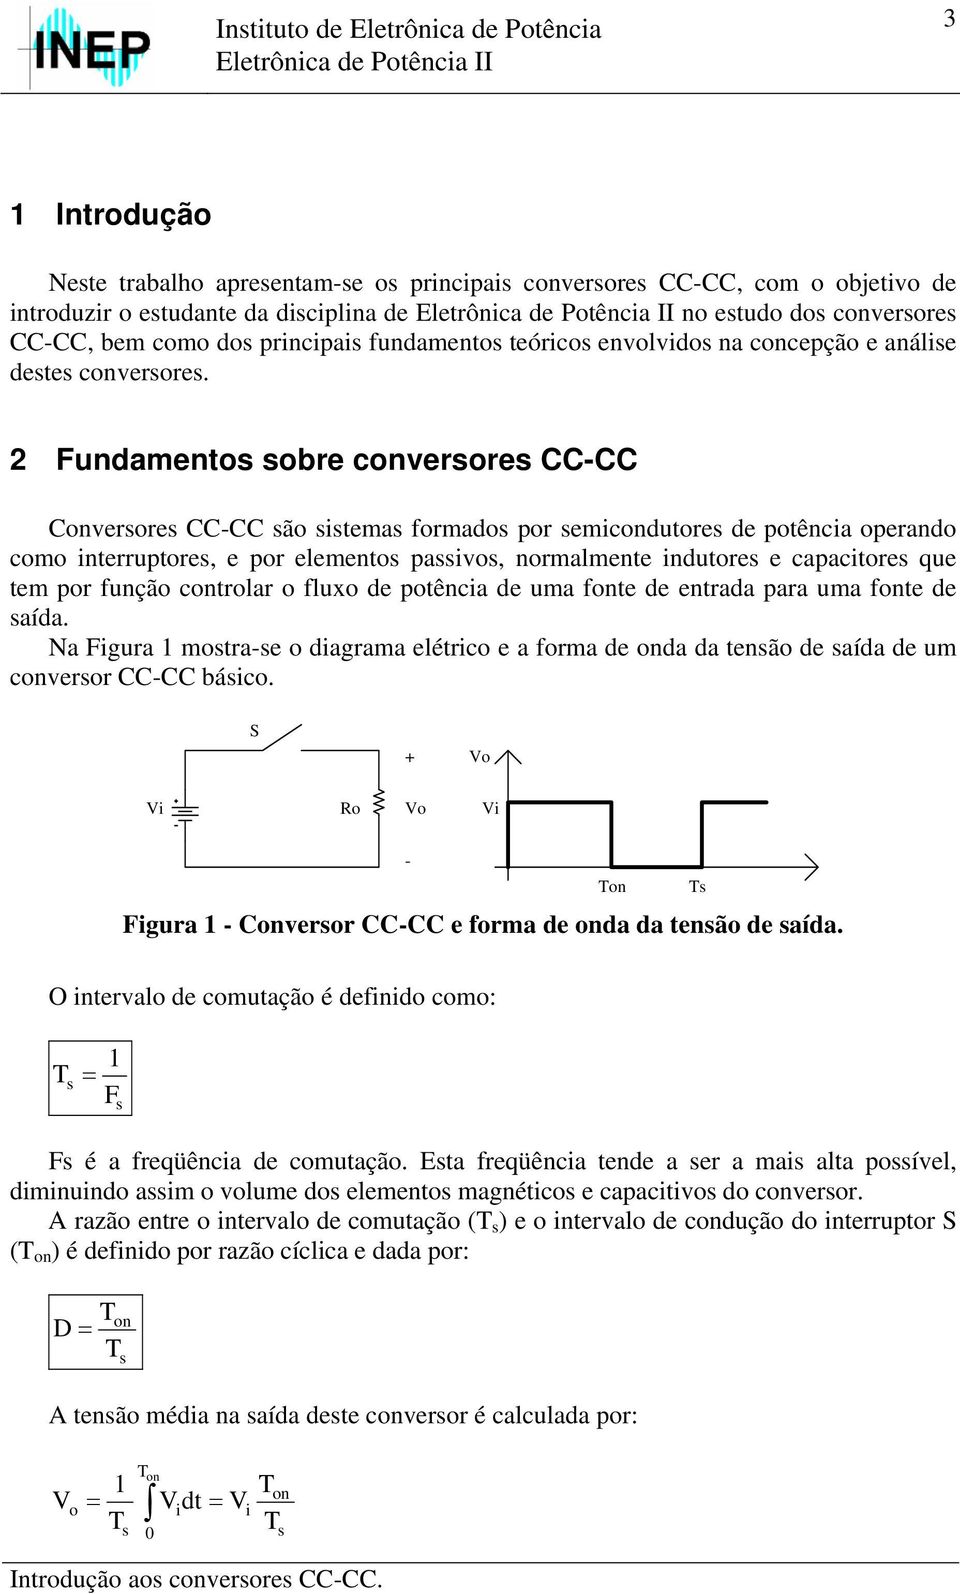 2 Fundamento obre converore CCCC Converore CCCC ão tema formado por emcondutore de potênca operando como nterruptore, e por elemento pavo, normalmente ndutore e capactore que tem por função controlar